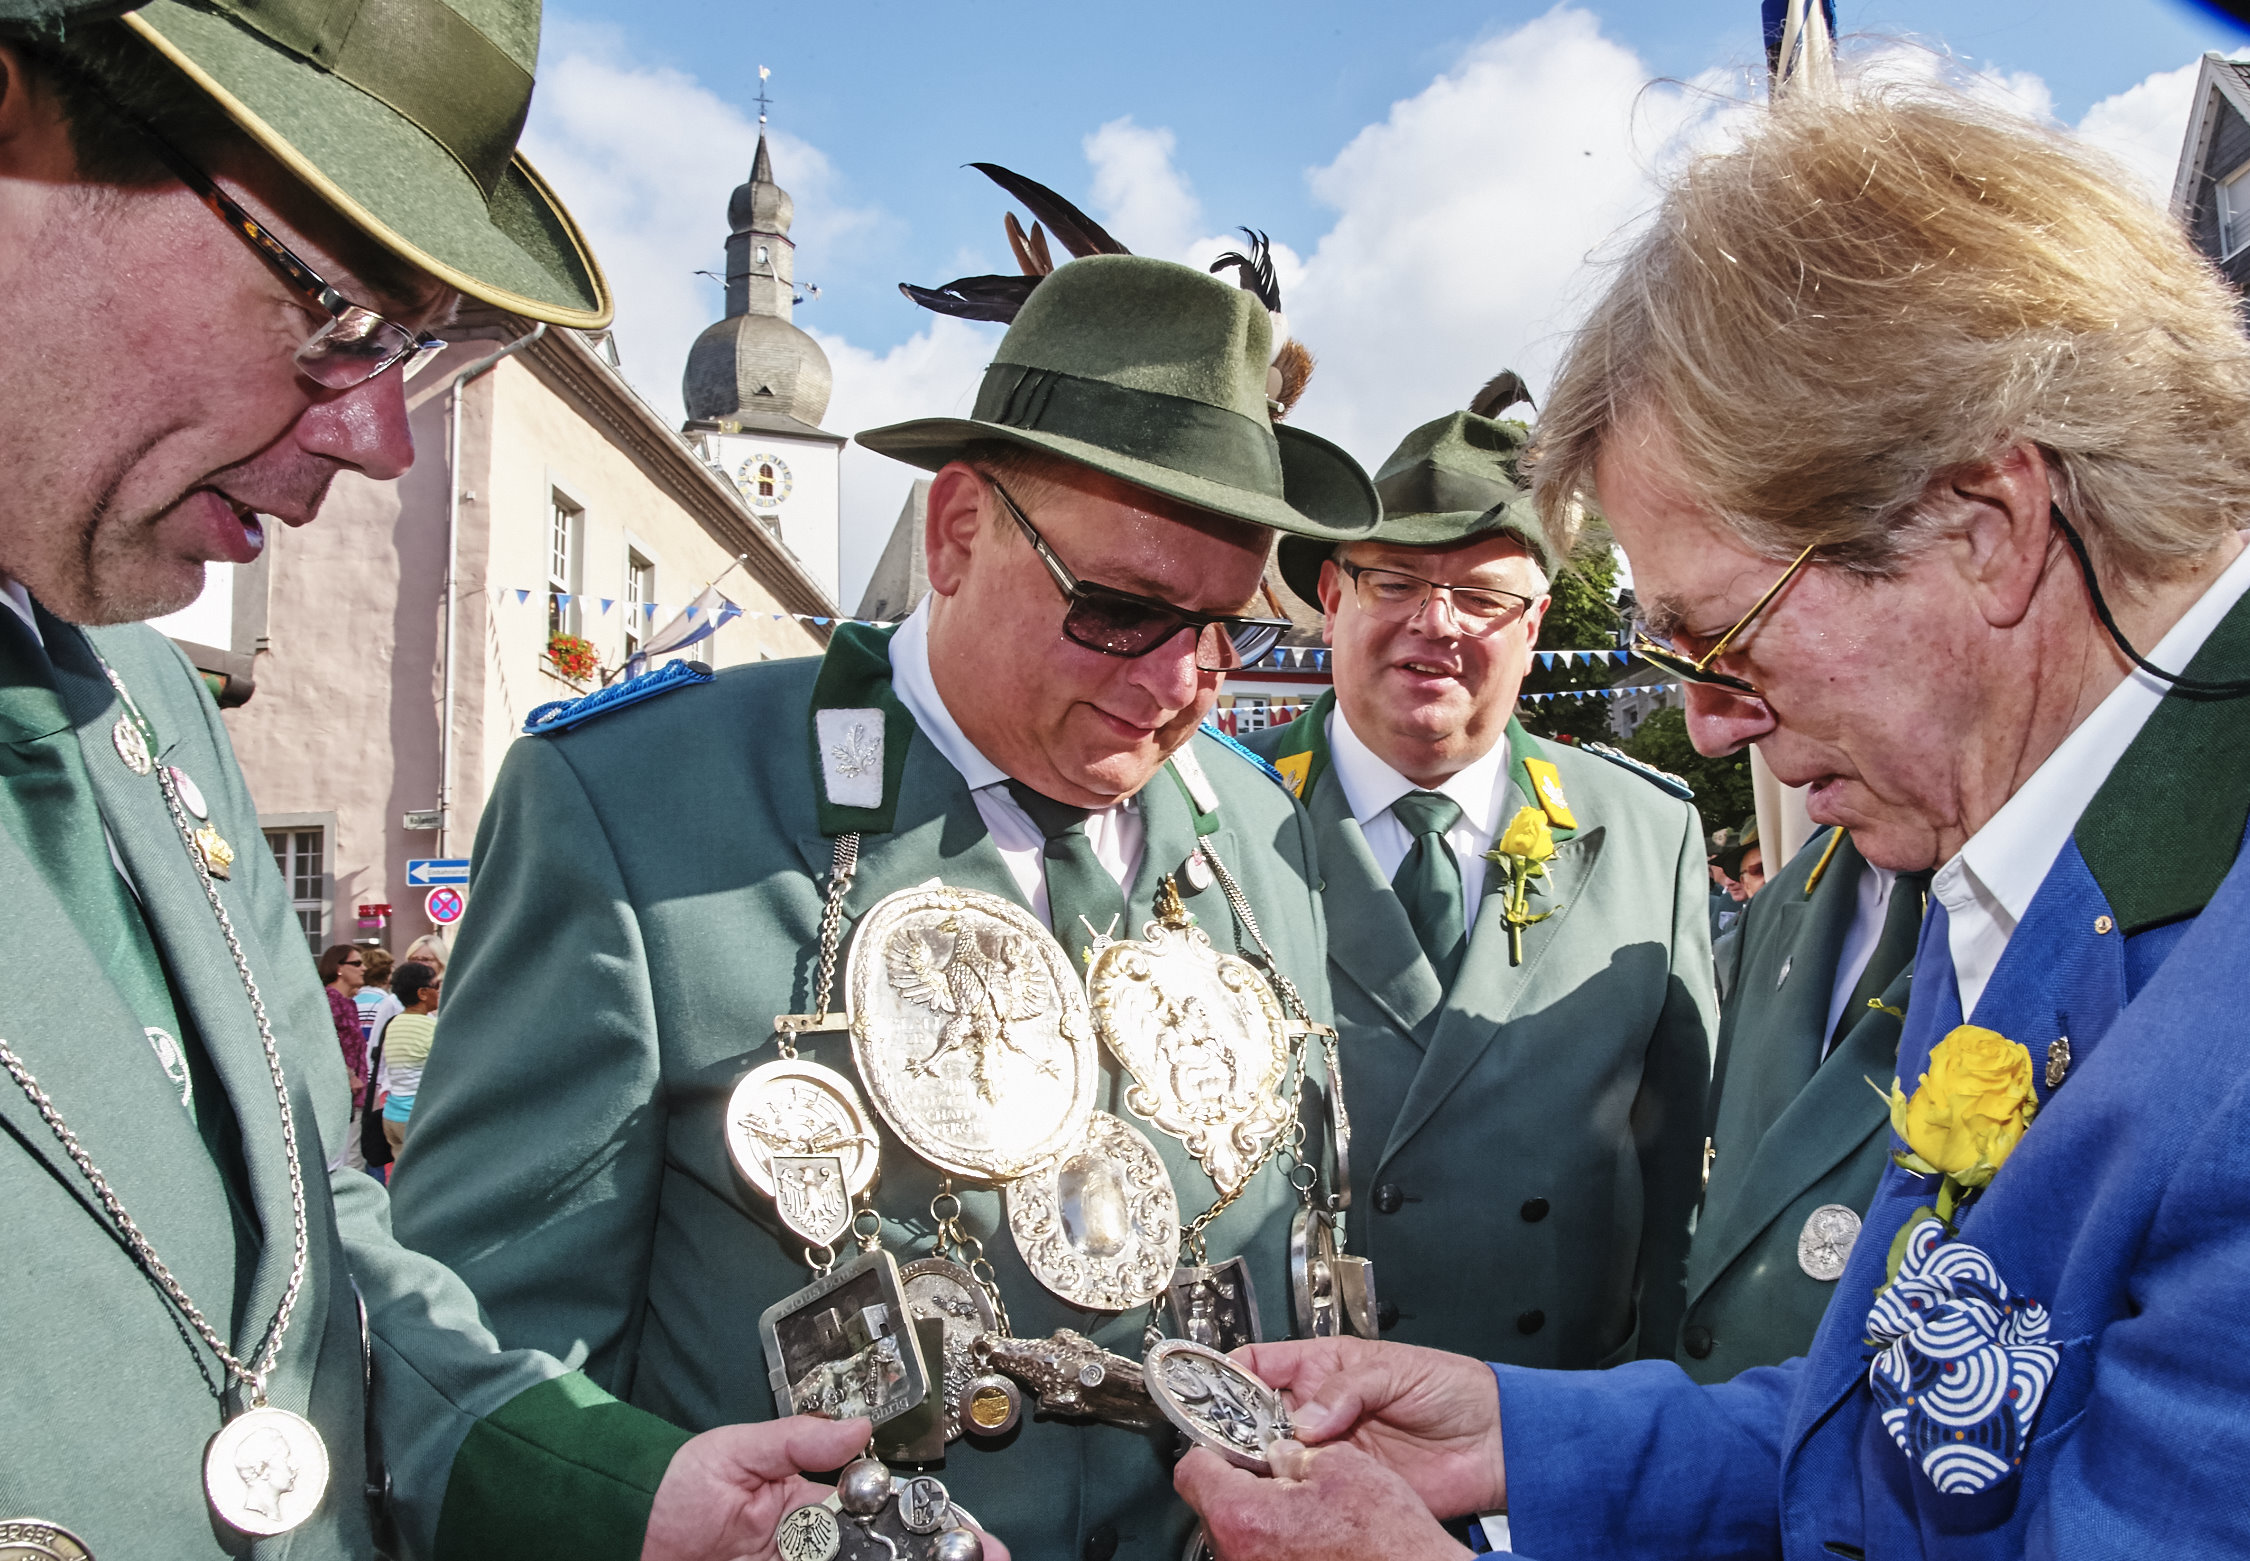 Leopold Prinz von Bayern, Ur-Ur-Urenkel von König Ludwig I., lässt sich von "Alt" Schützenkönig Christian Drees den Orden an der großen Königskette erklären!